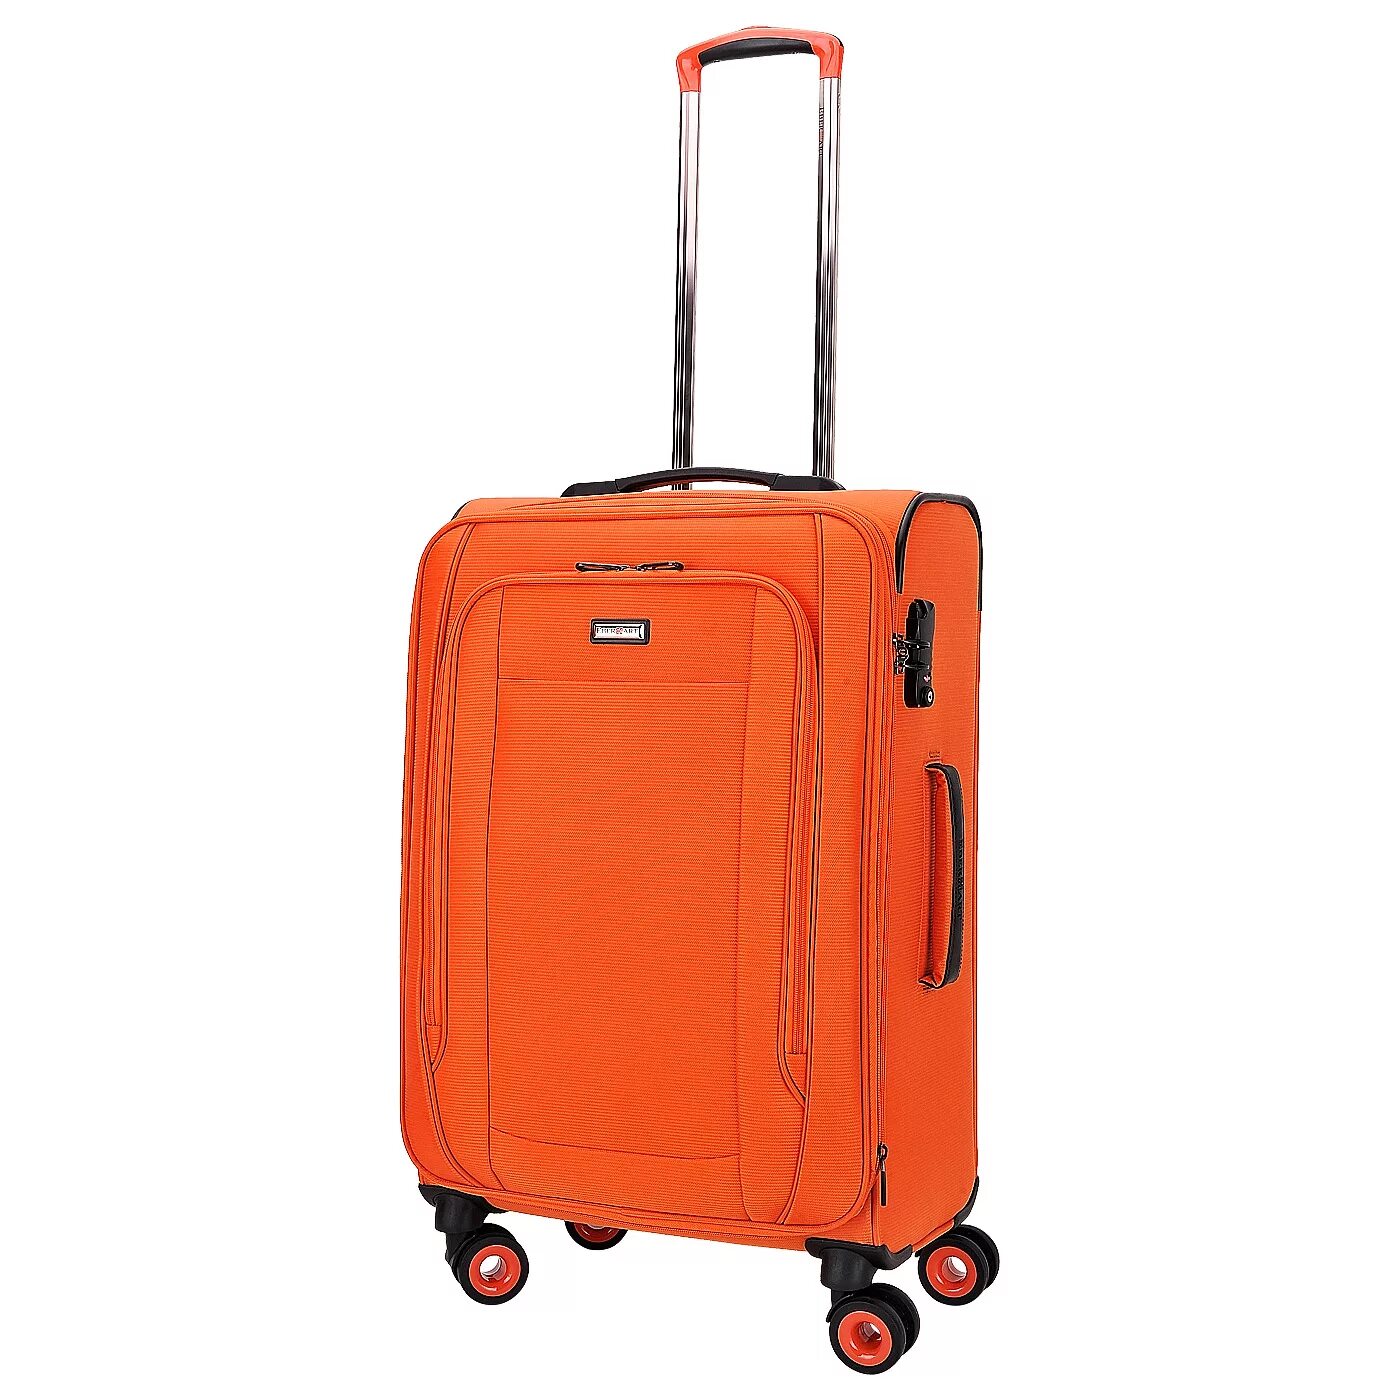 Купить чемодан на колесиках в интернете. Тканевый чемодан Eberhart Pan Chemodan. Чемодан сумка Eclipse. Оранжевый чемодан. Оранжевый чемодан на колесиках.